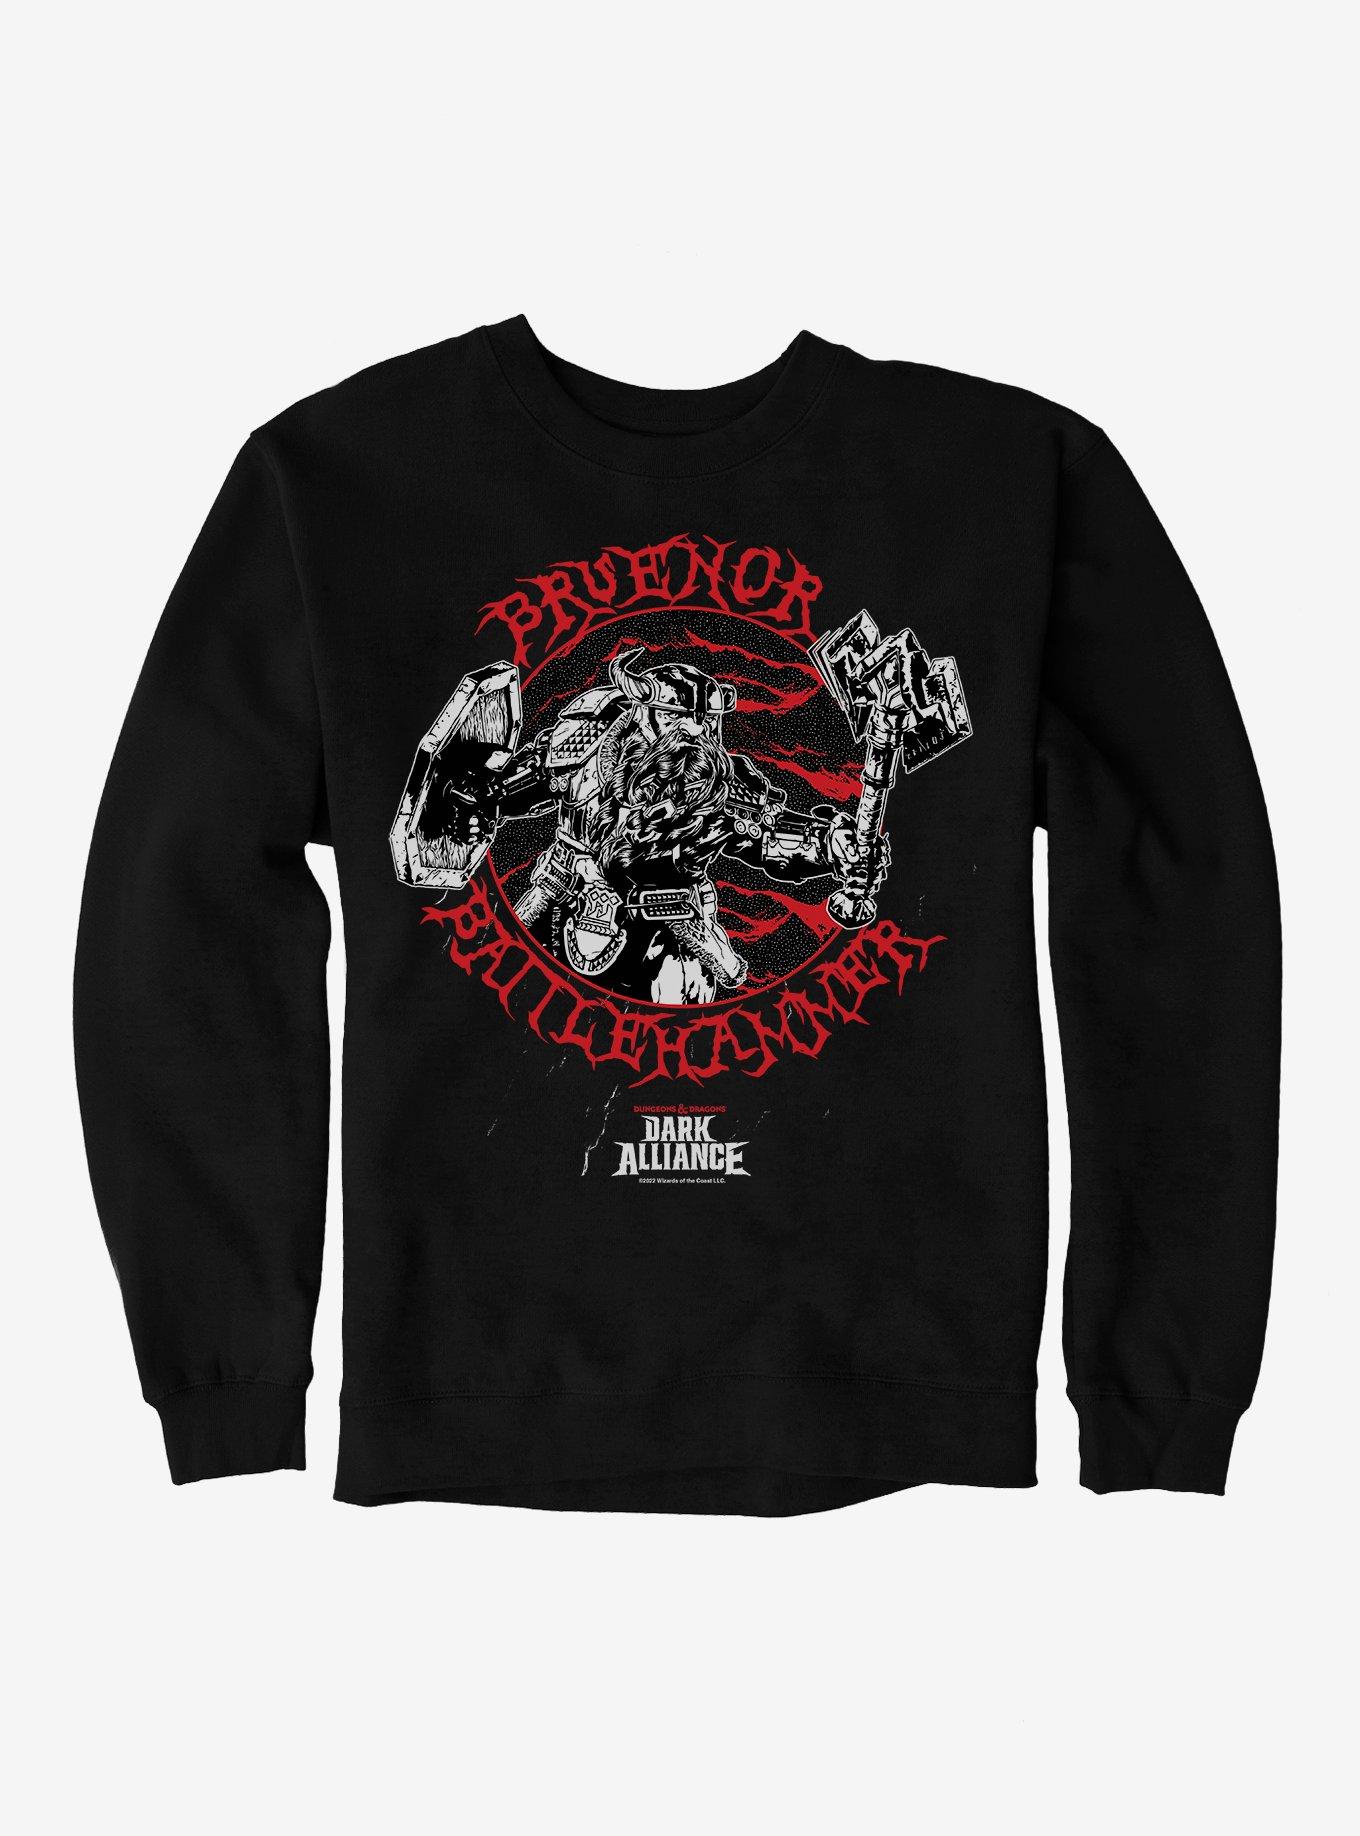 Dungeons & Dragons Dark Alliance Bruenor Battlehammer Sweatshirt